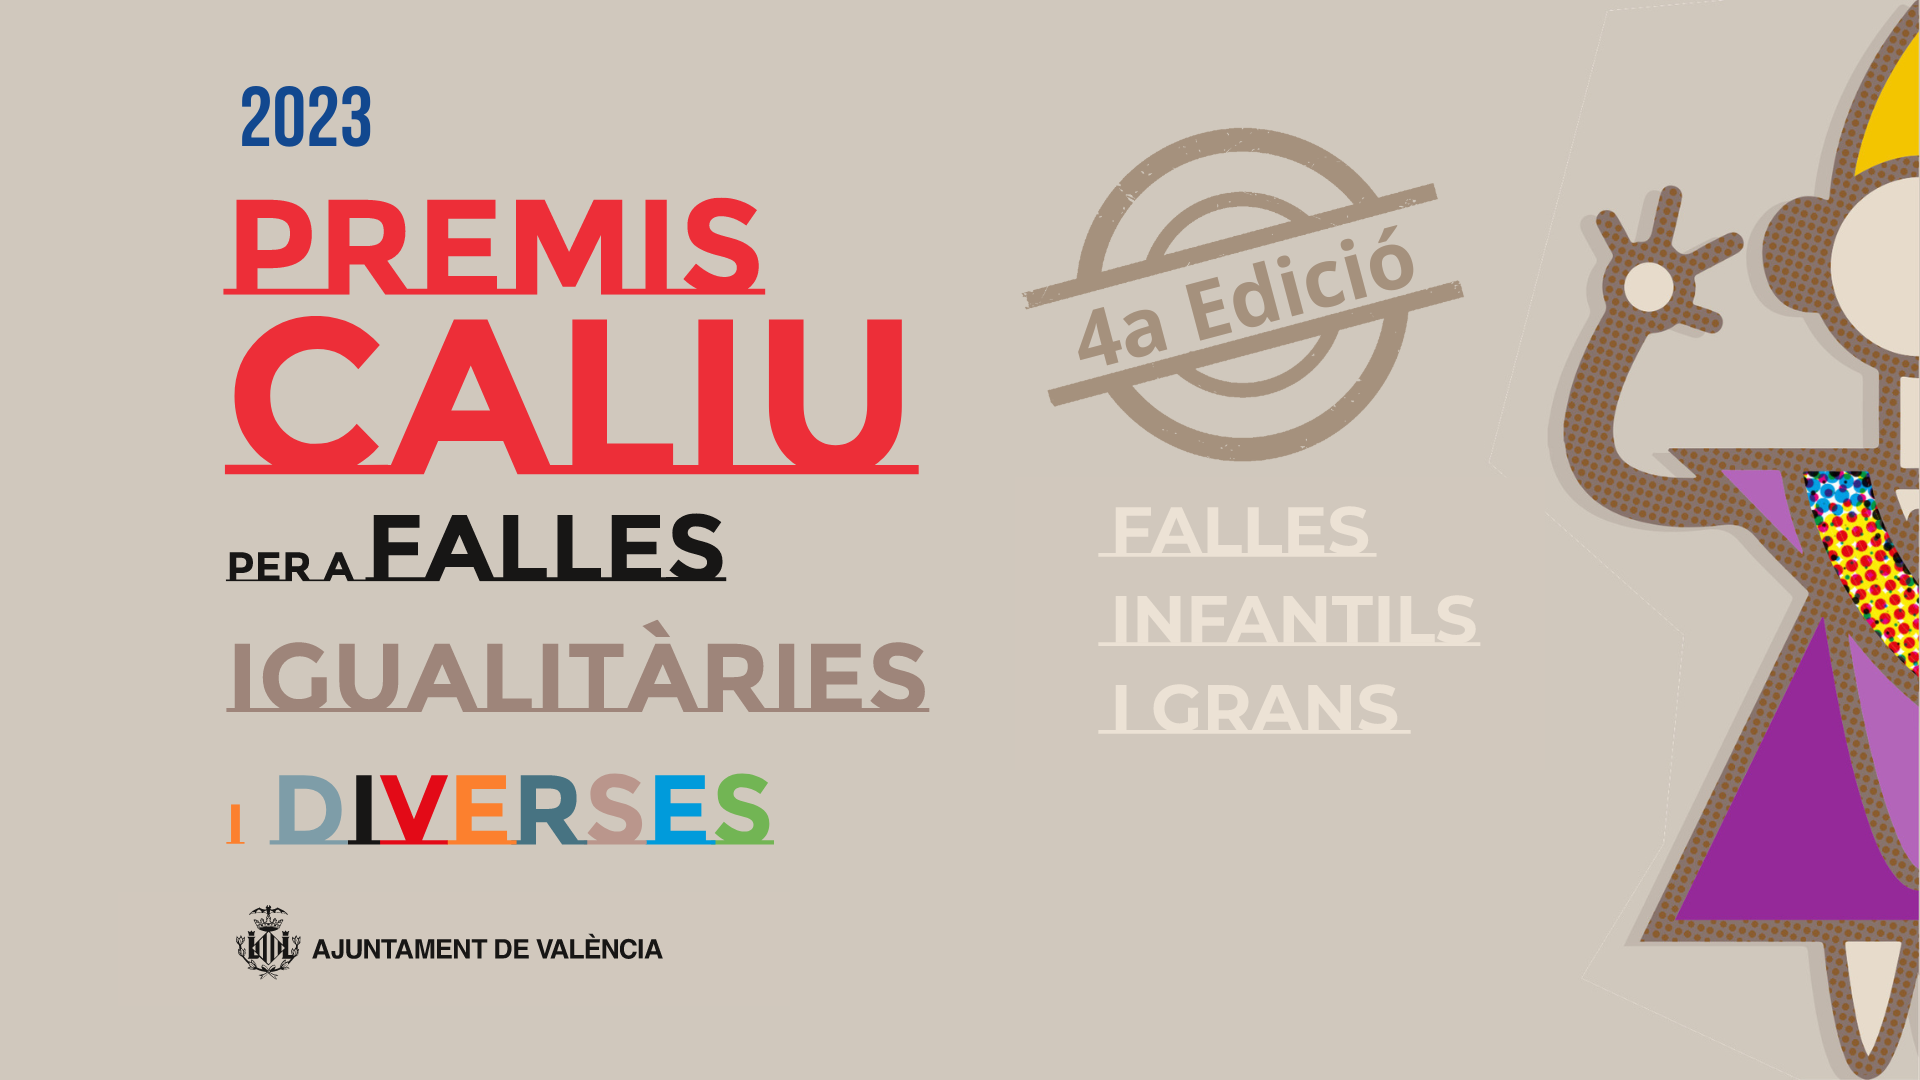 Premis Caliu, a les falles de l'any 2023 pel seu caràcter igualitari i divers